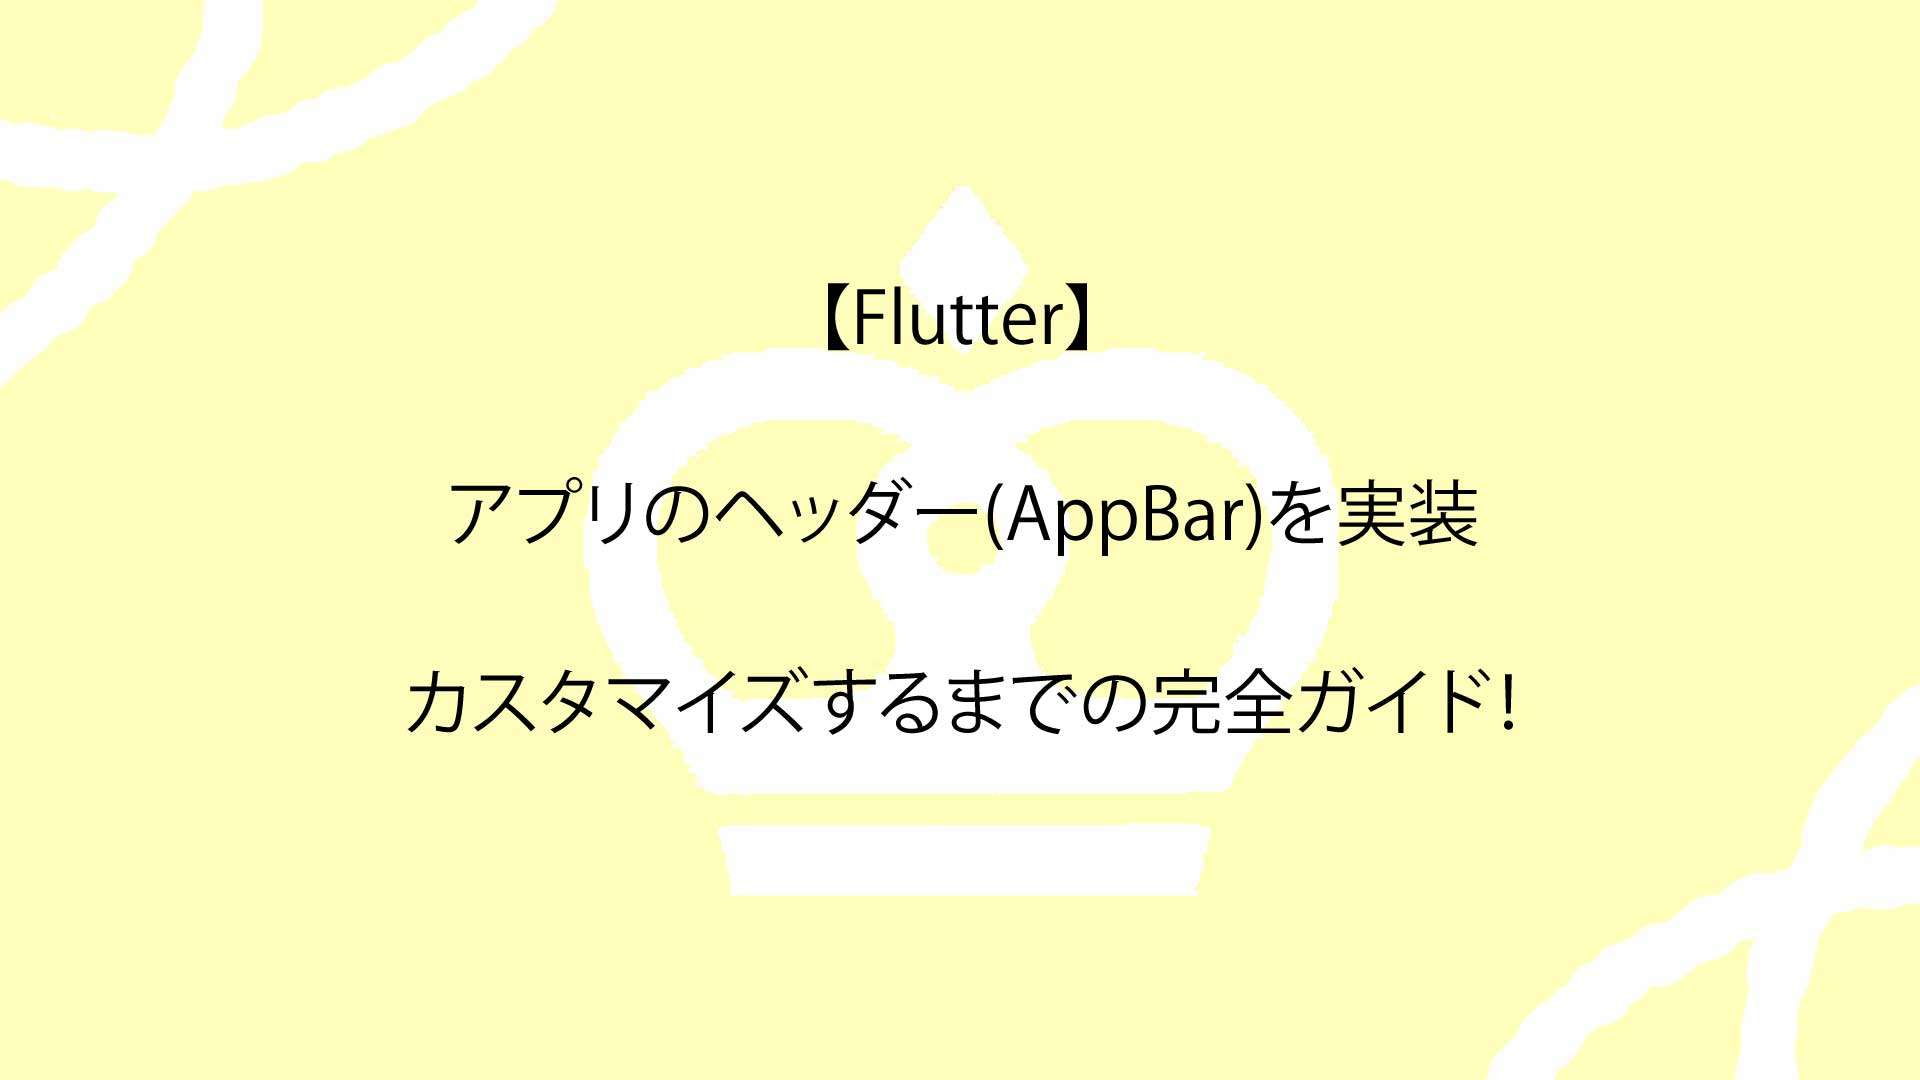 【Flutter】アプリのヘッダー(AppBar)を実装し、カスタマイズするまでの完全ガイド！